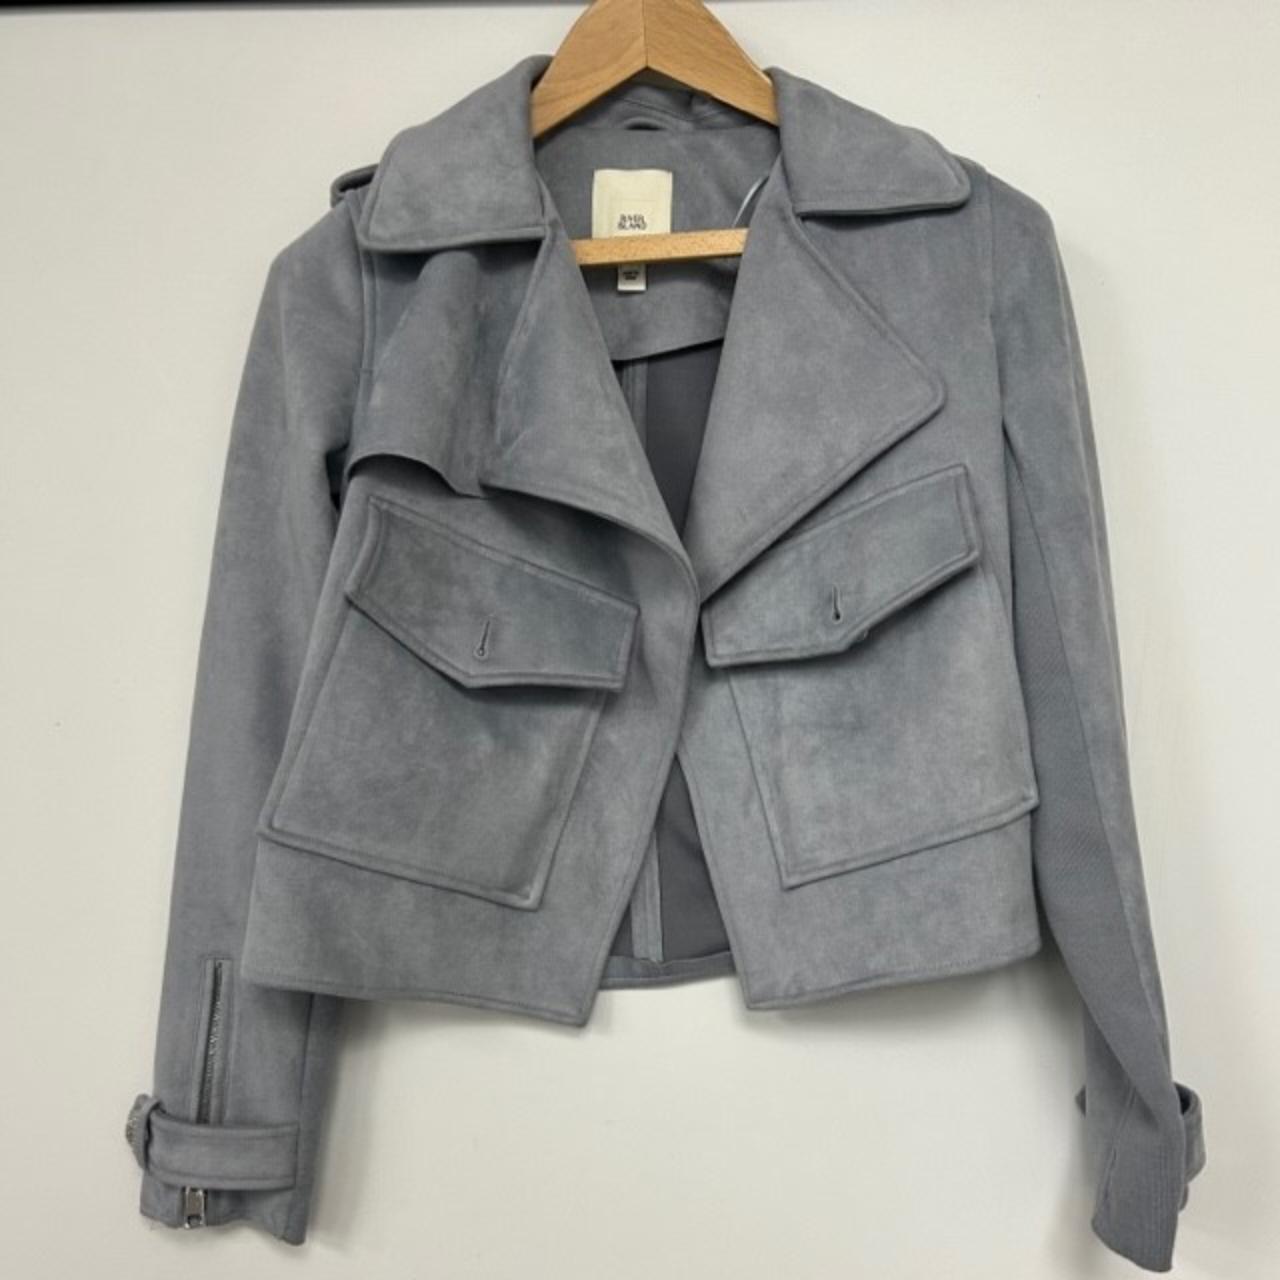 blue suede jacket size 8 #suede #jacket... - Depop